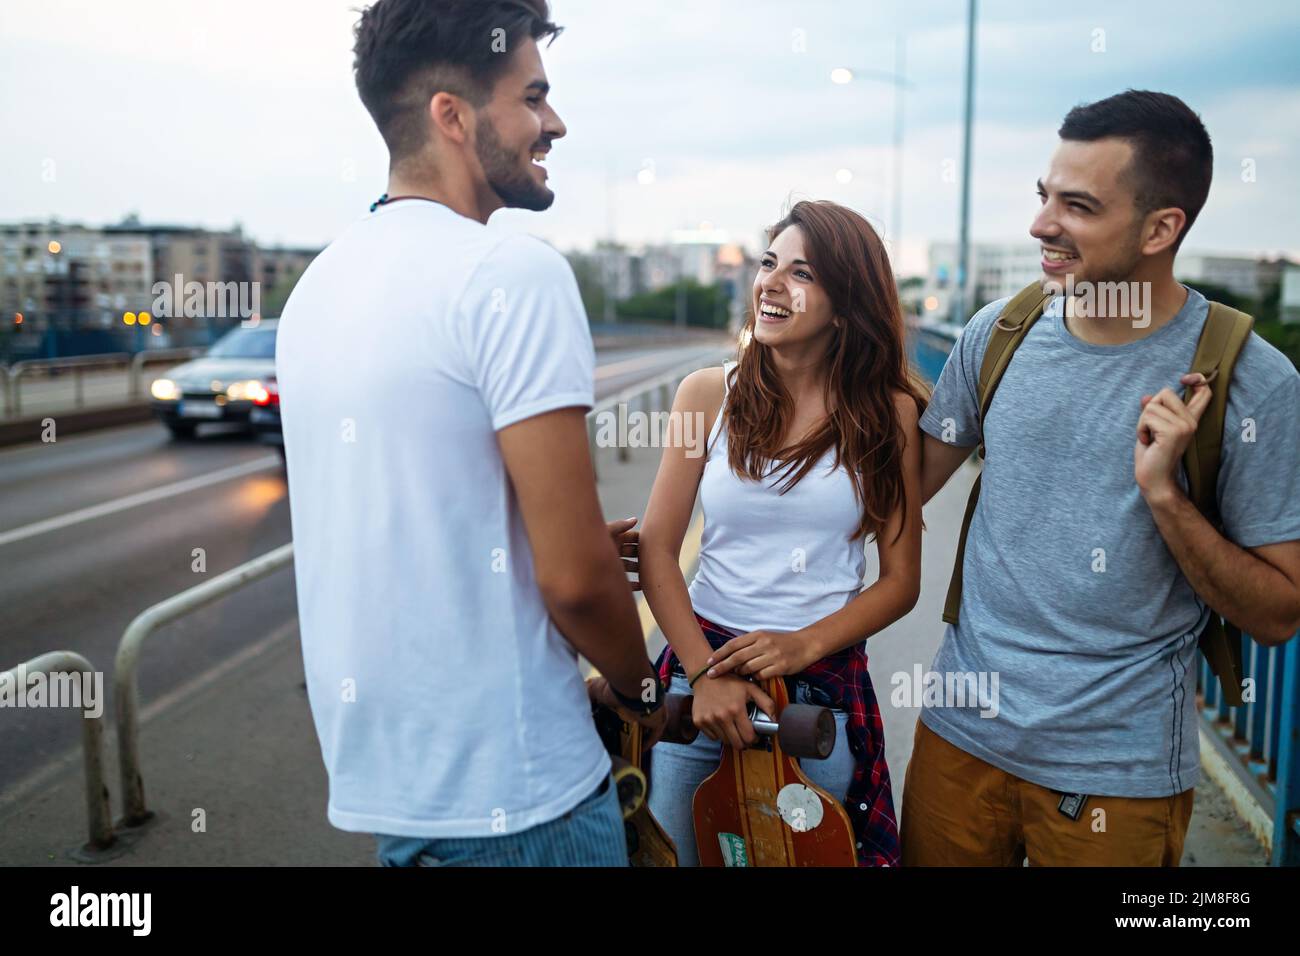 Retrato de adolescentes felices que se divierten mientras conducen un skateboard en la ciudad al aire libre. Foto de stock